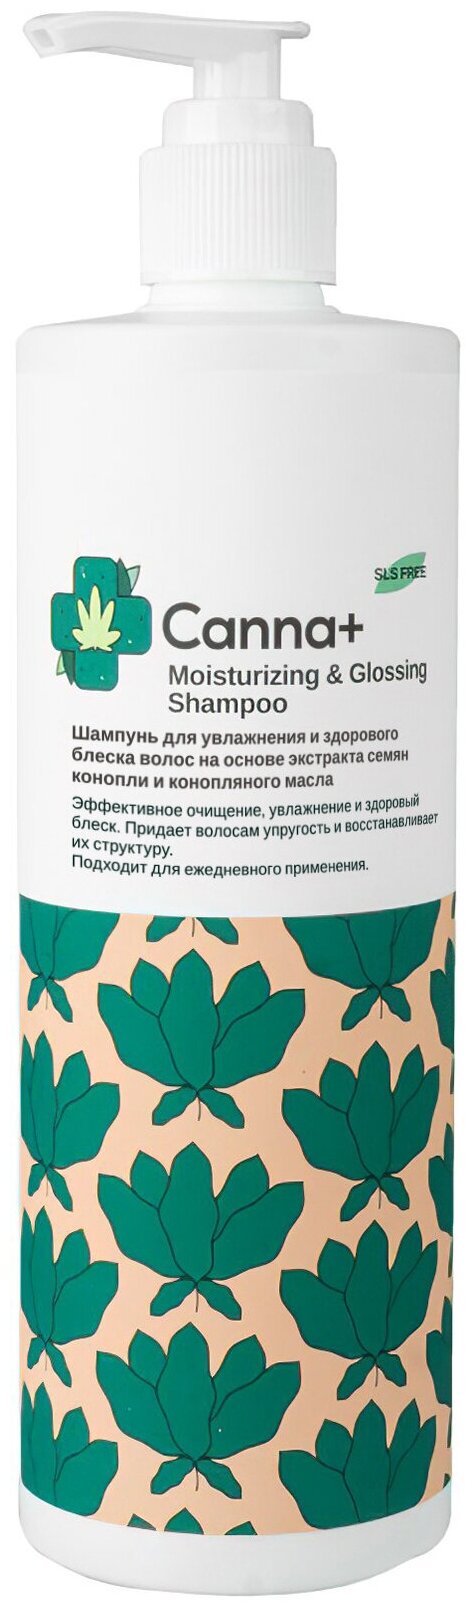 CANNA+ Шампунь для увлажнения и здорового блеска волос Moisturizing & Glossing Shampoo 400 мл